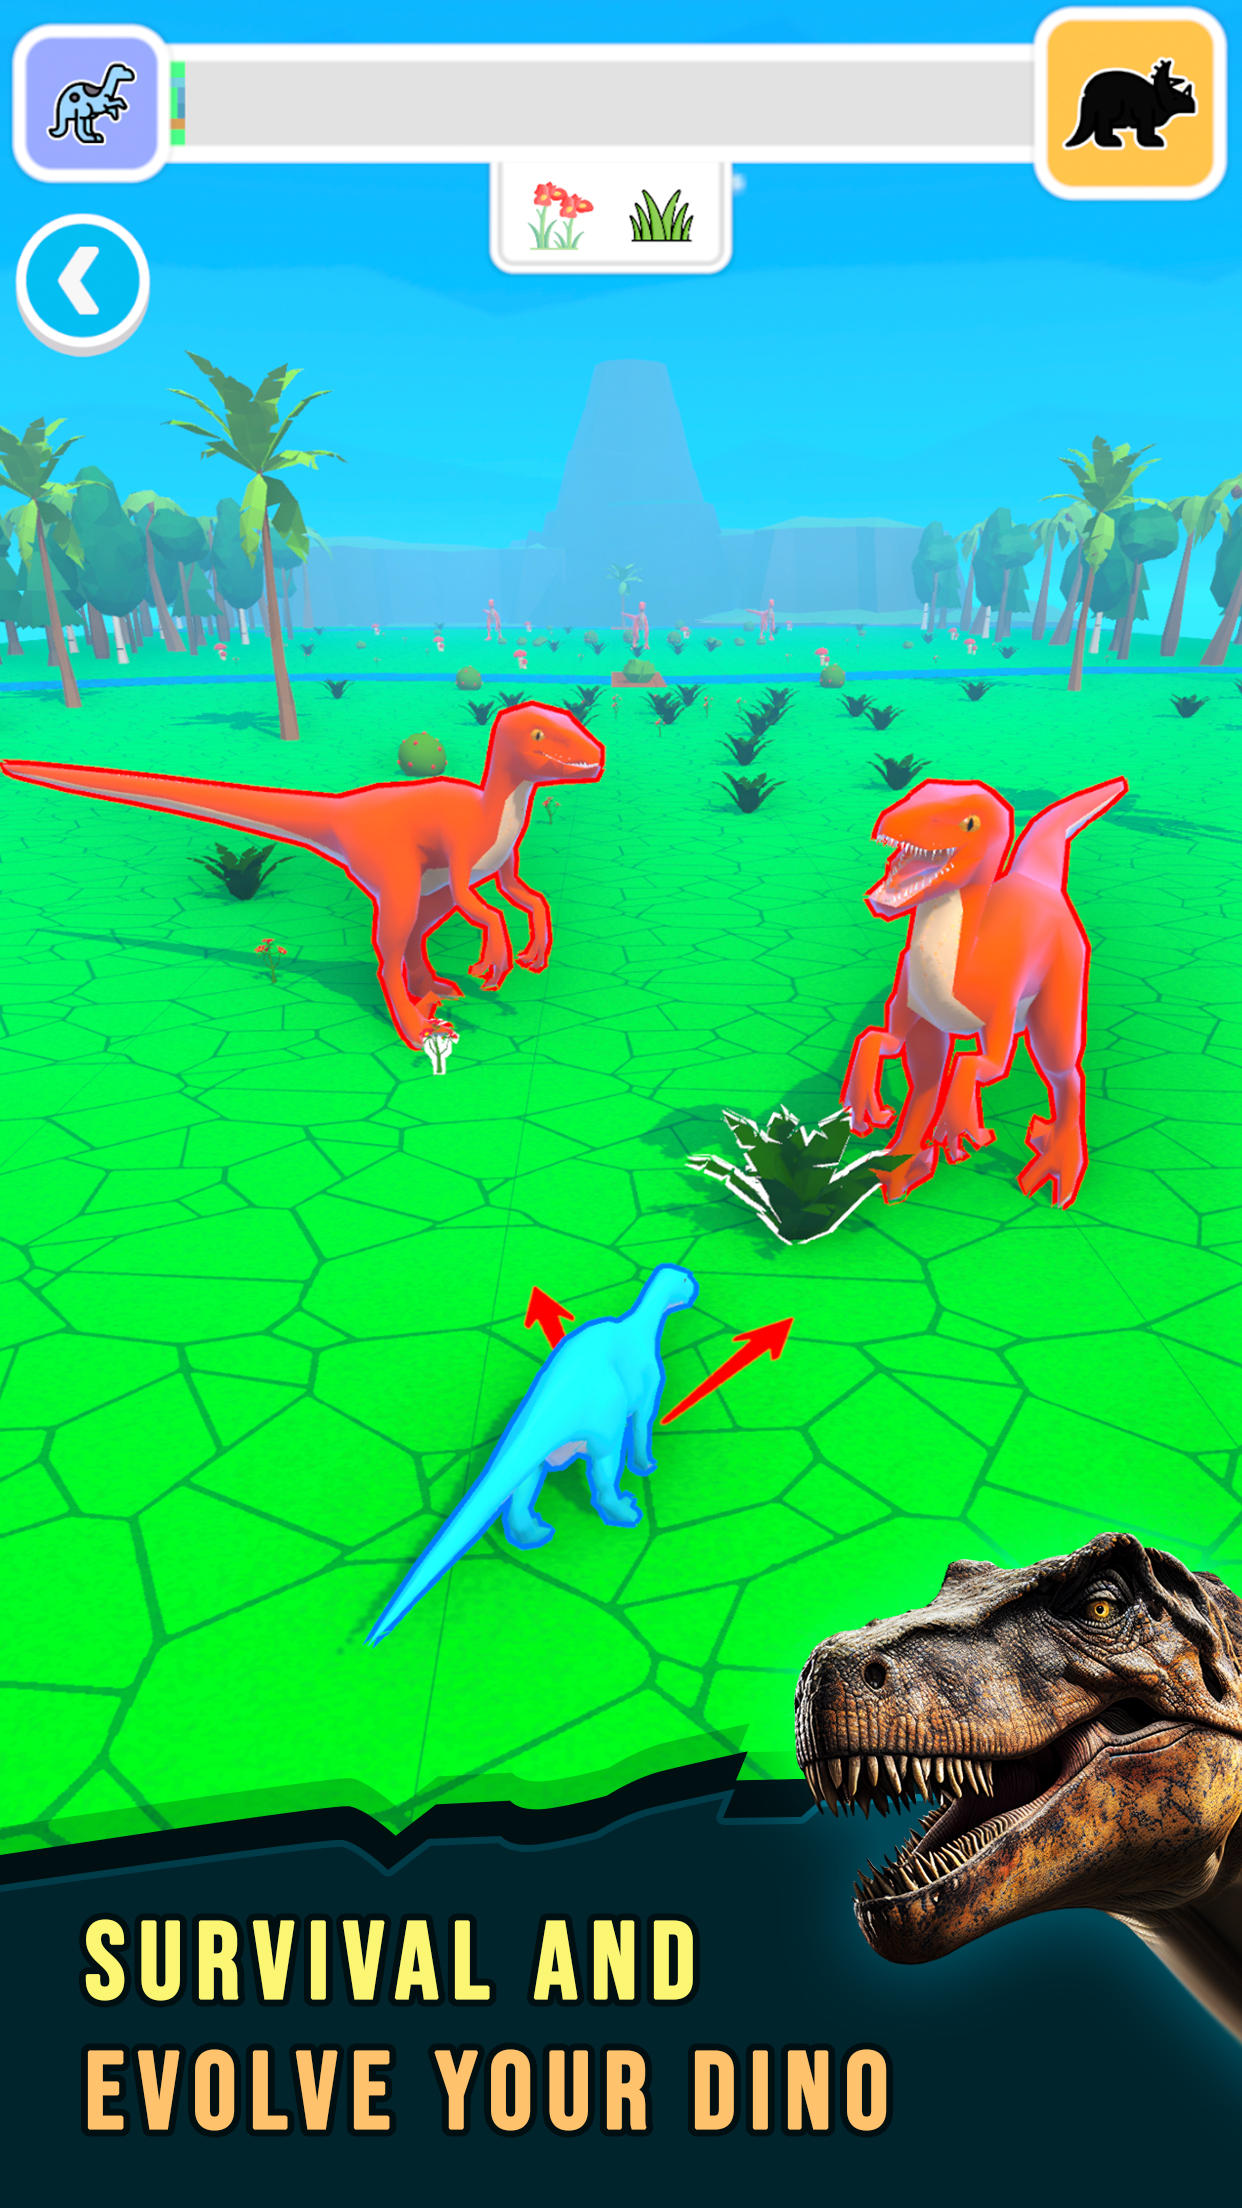 Screenshot 1 of Dino စိုးမိုးမှု 0.6.0